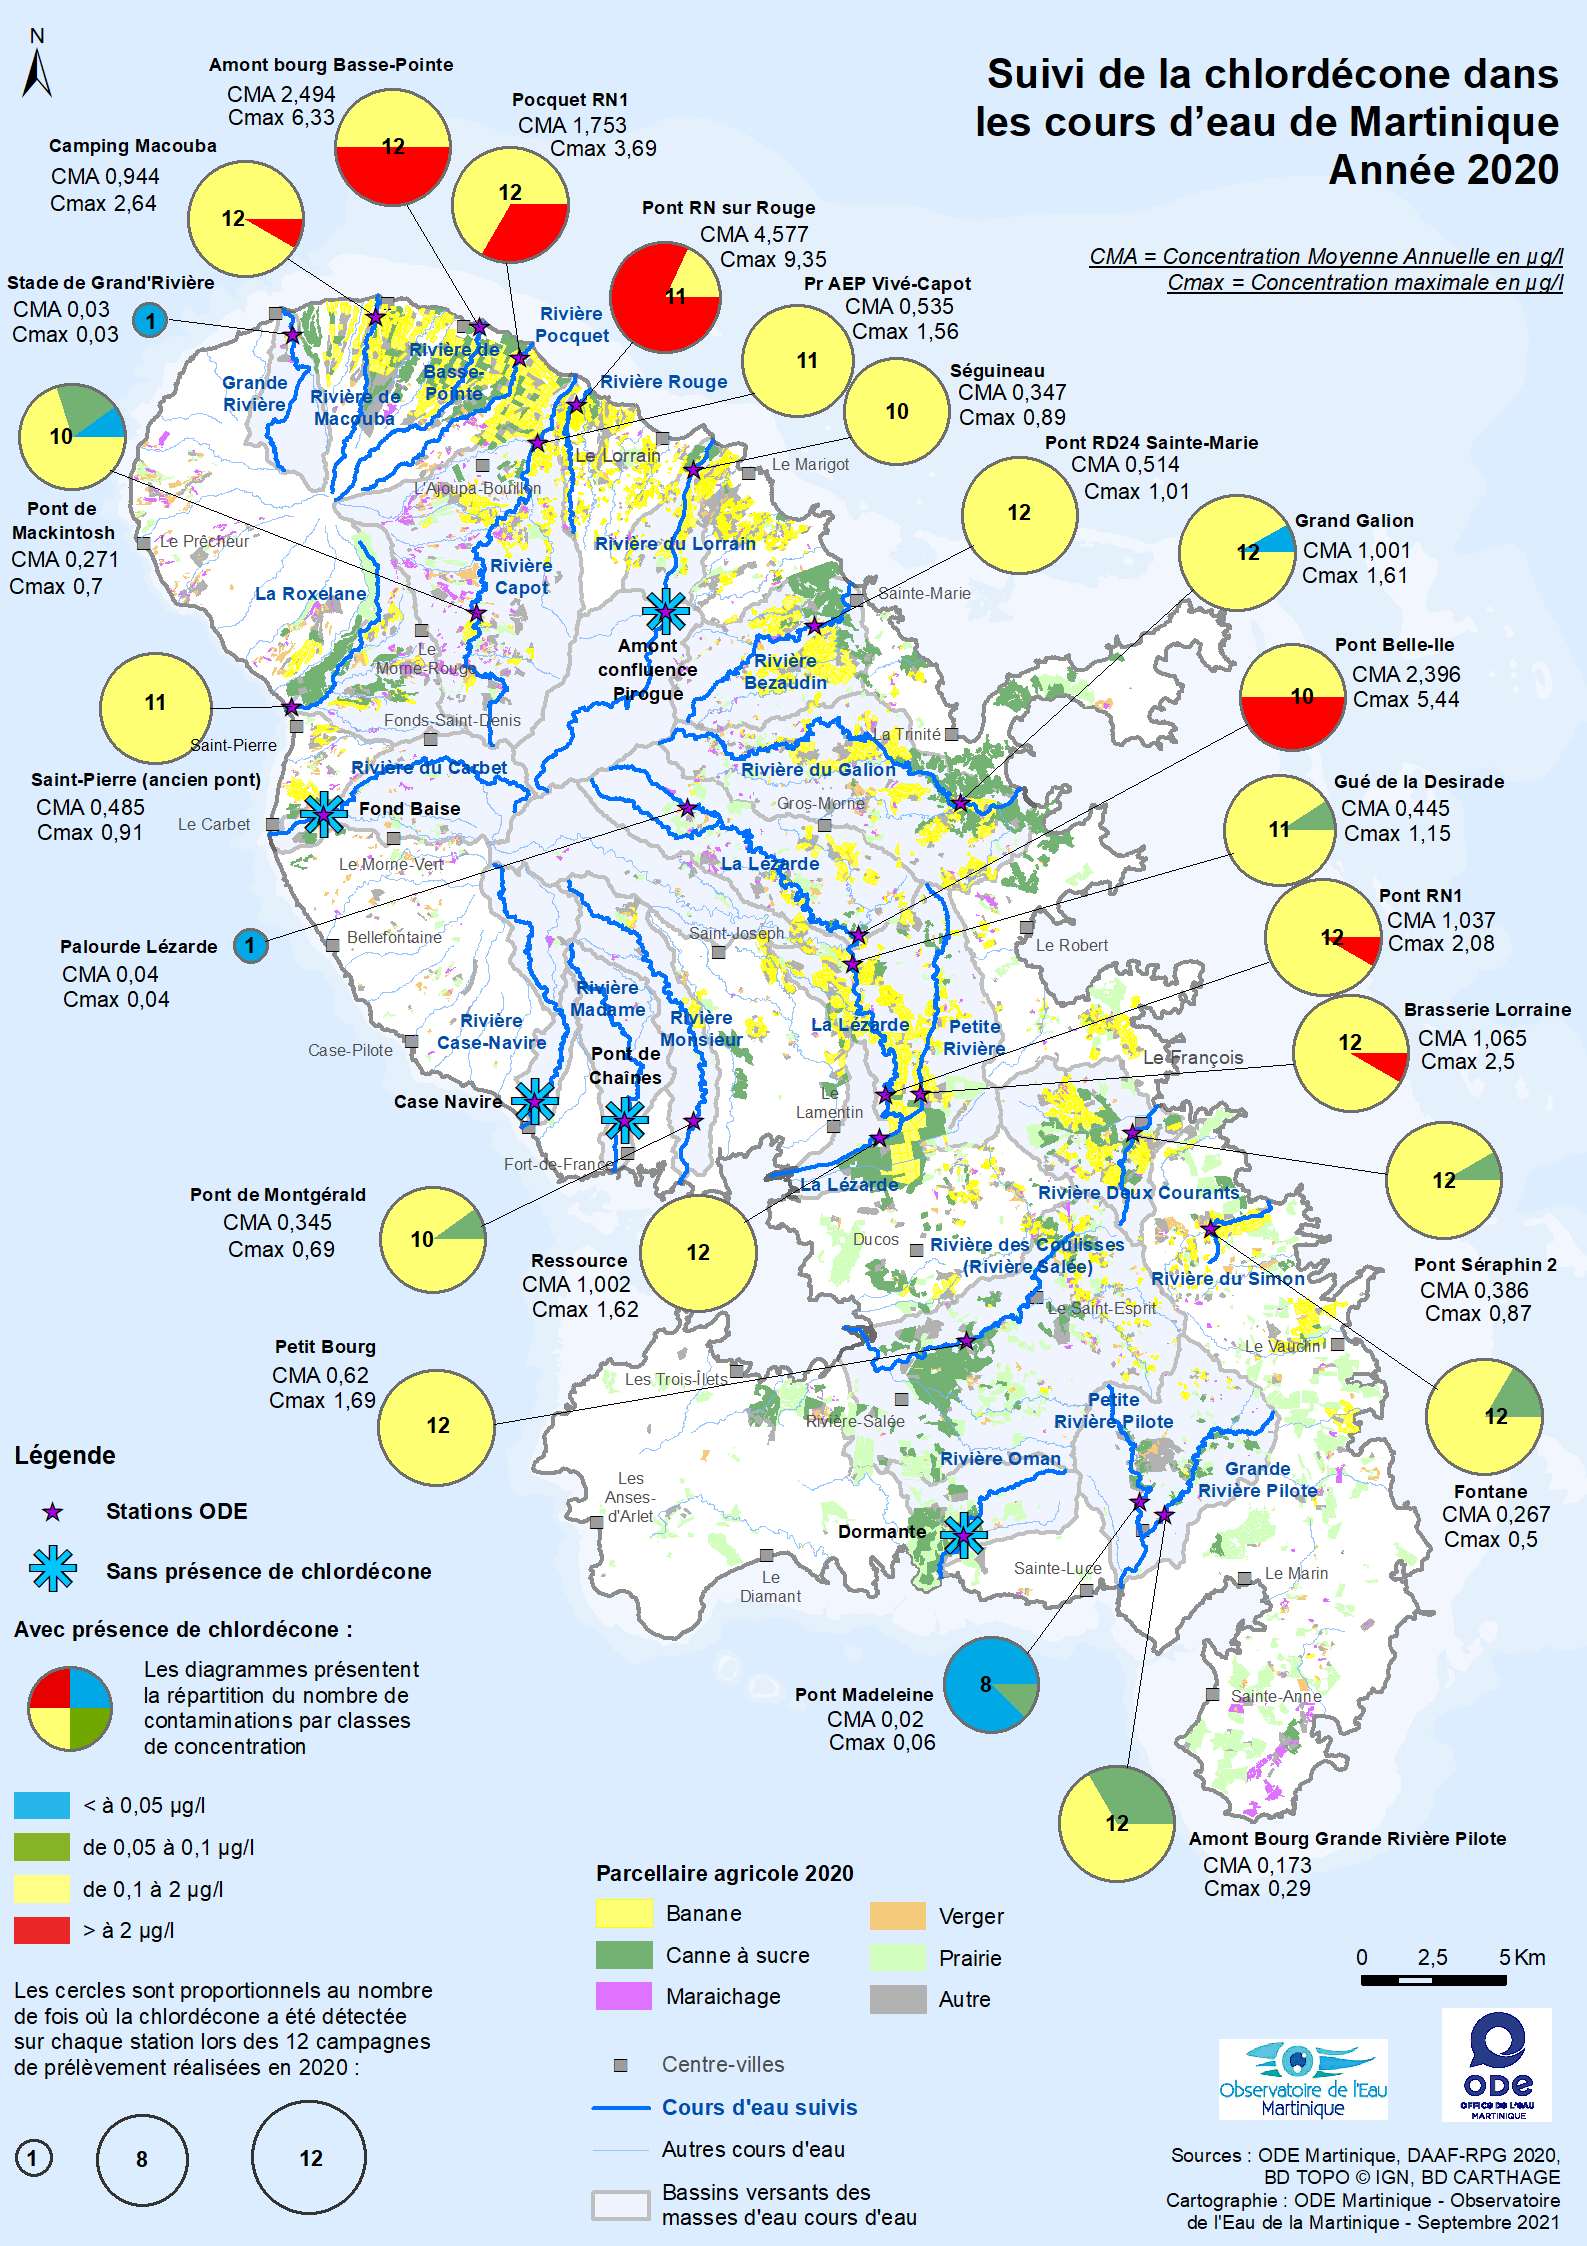 Suivi de la chlordécone dans les cours d'eau de Martinique - Année 2020